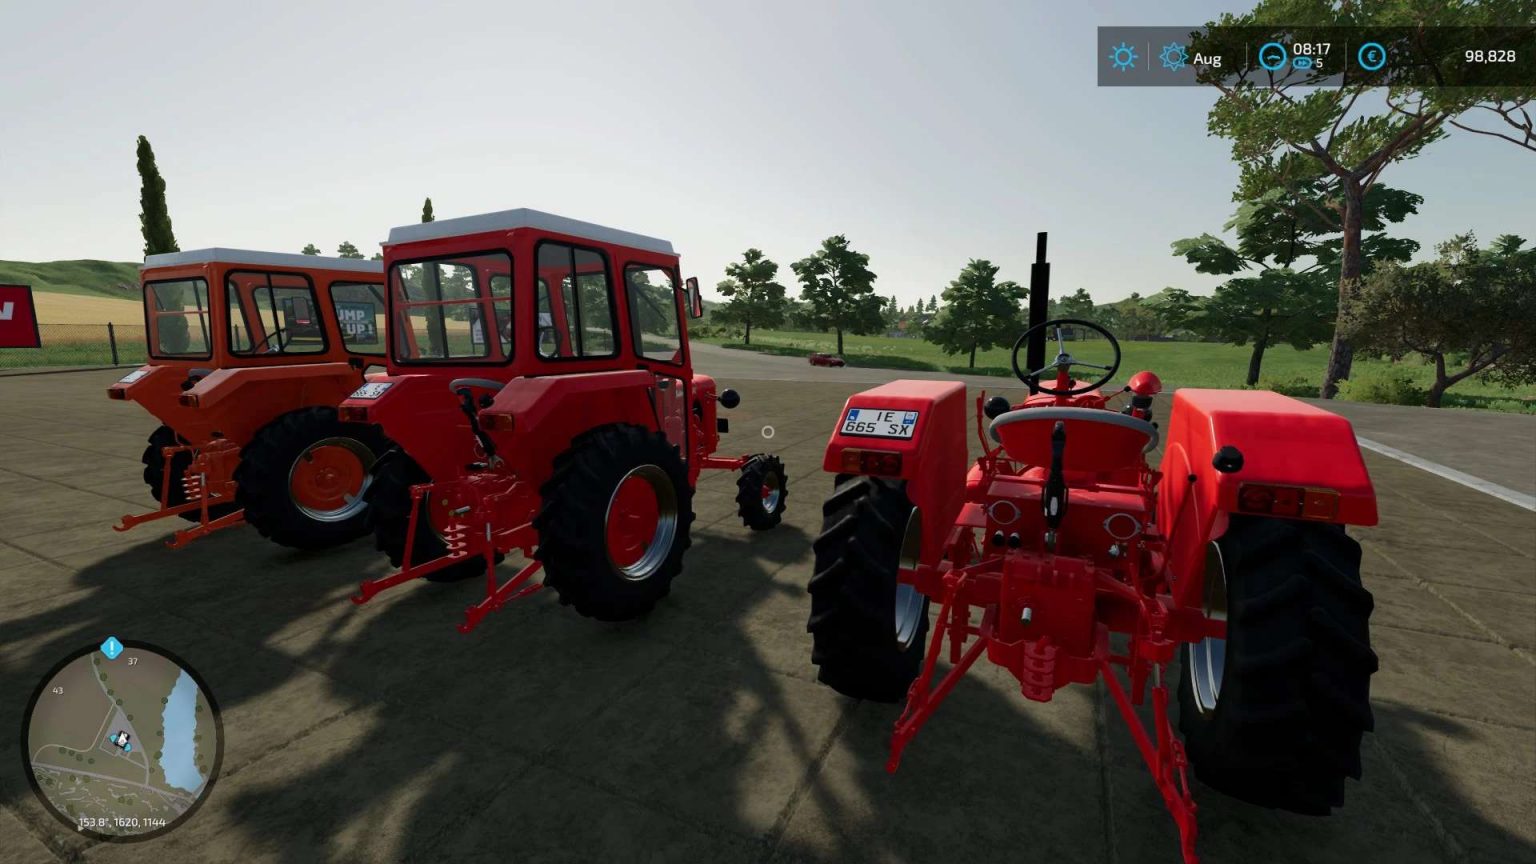 Zetor 25a V1110 Fs22 Mod Farming Simulator 22 Mod 5258